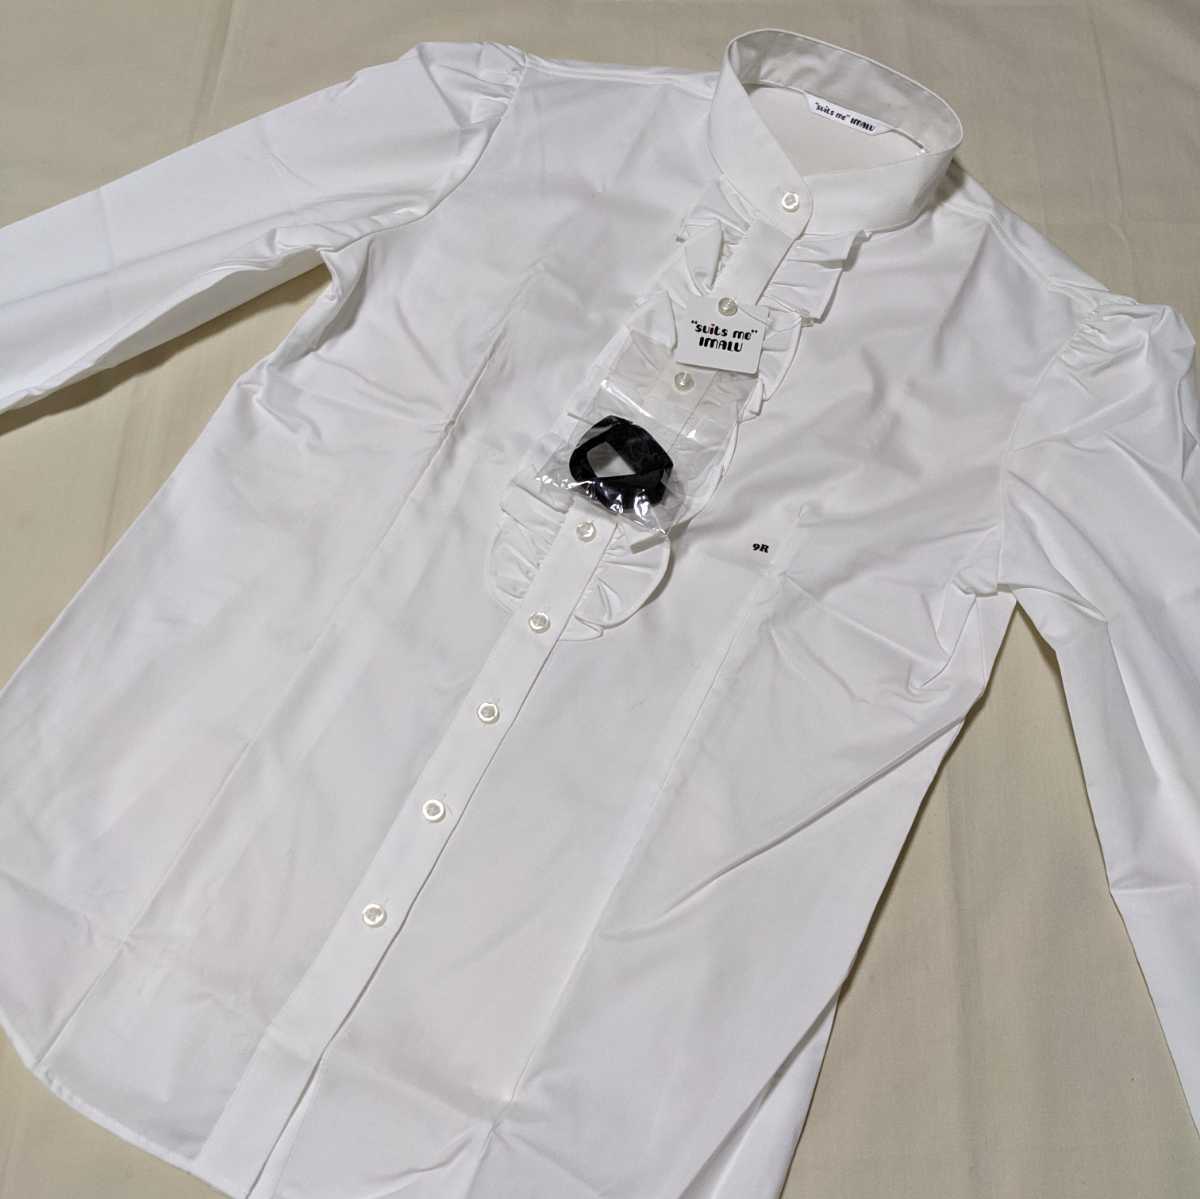 +FG35 новый товар не использовался suits me IMALU европейская одежда. Aoyama формальный 9 номер 9R длинный рукав блуза белый оборка воротник-стойка церемония бизнес 